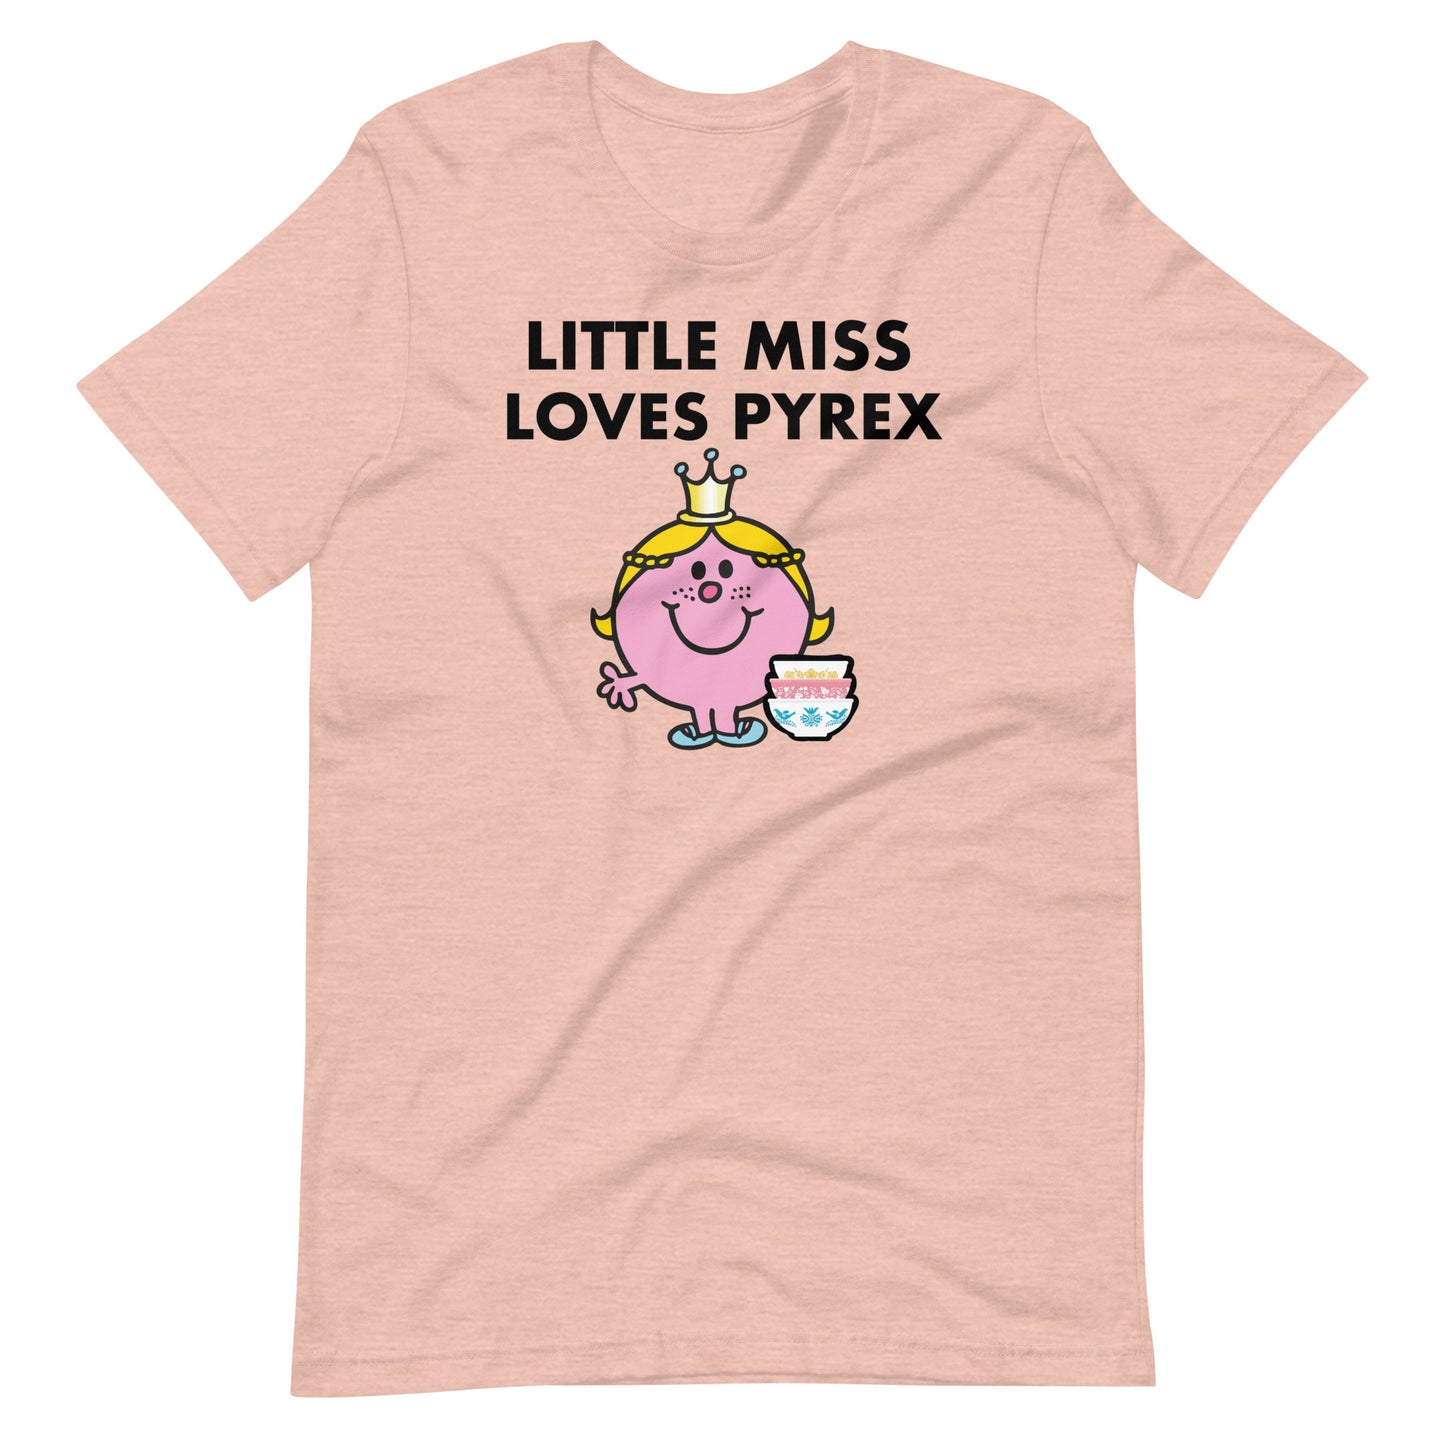 Little Miss Loves Pyrex Short Sleeve T-shirt